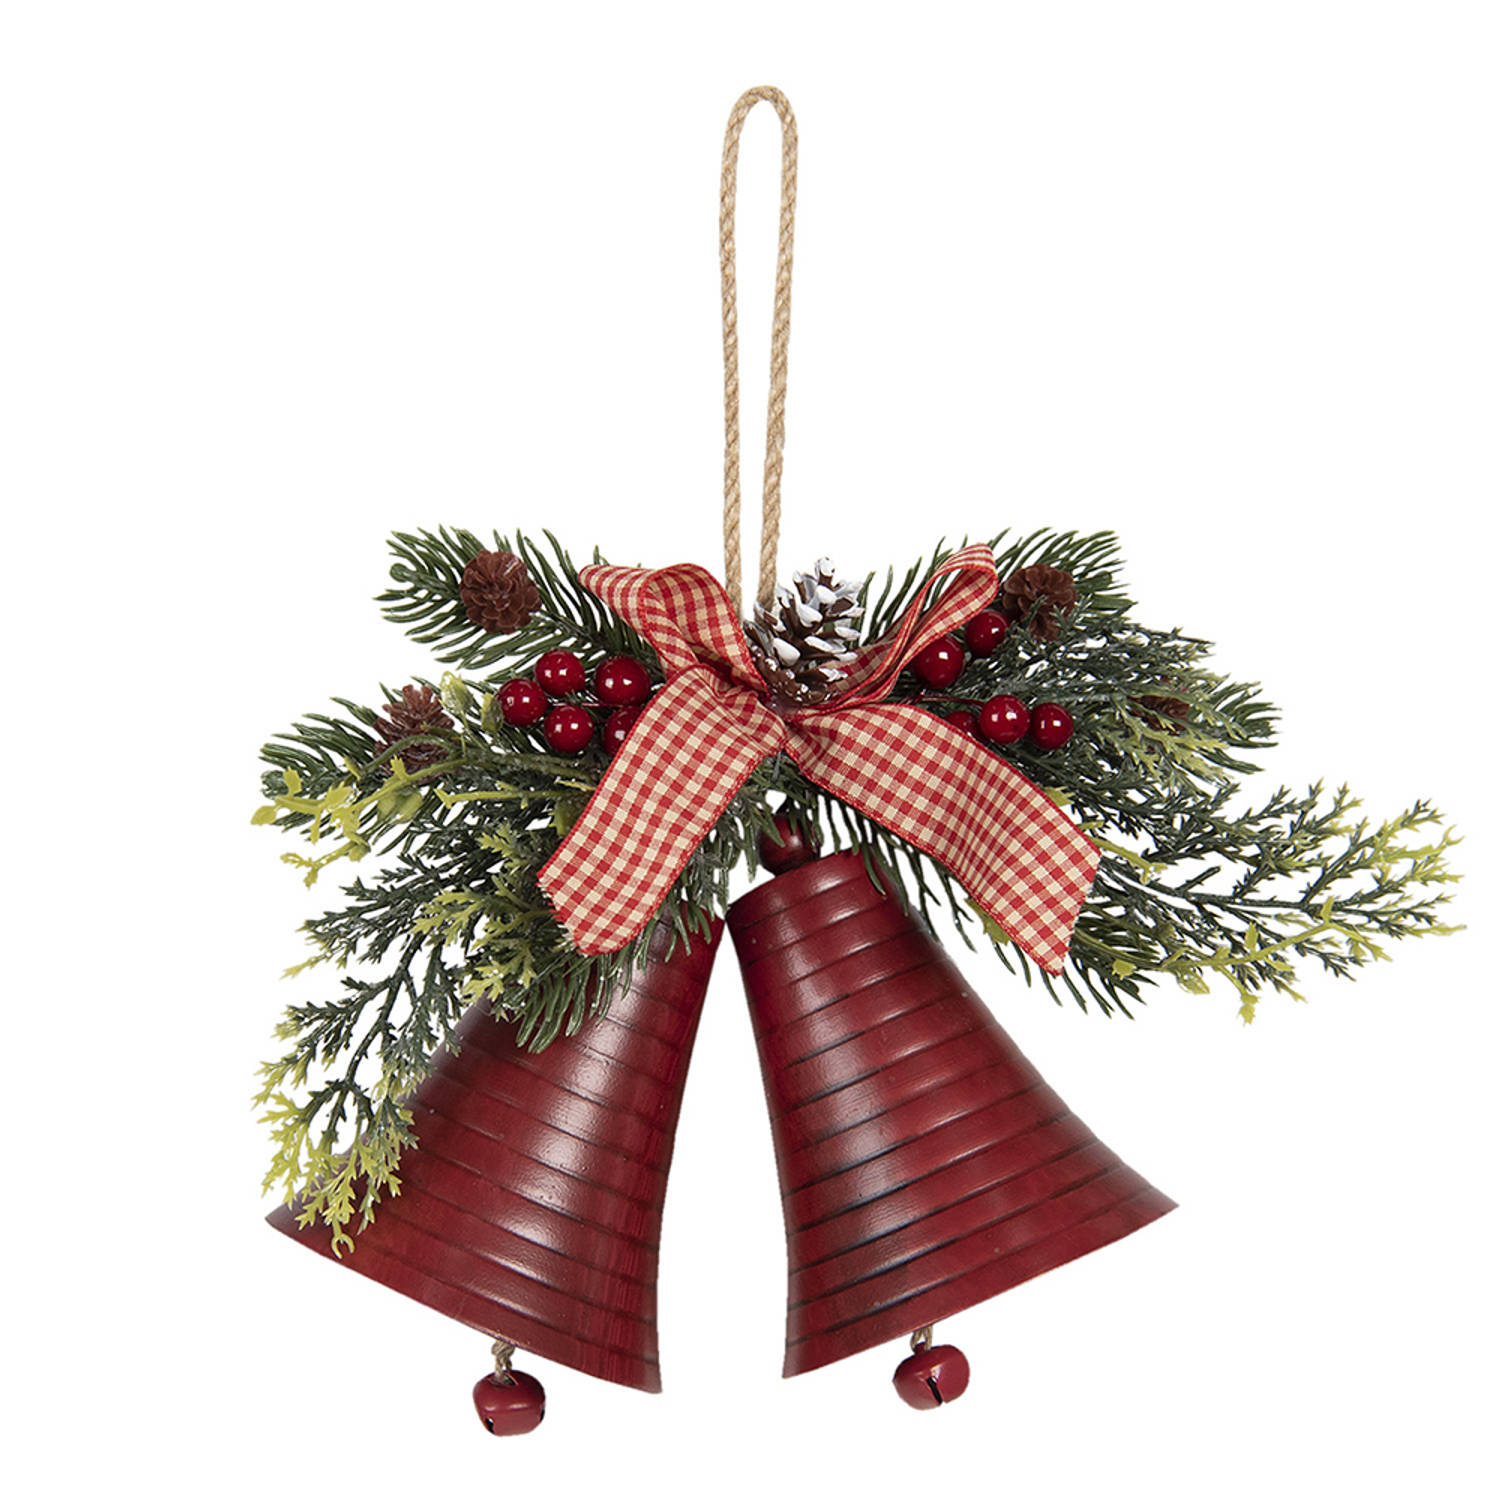 HAES DECO - Kersthanger Bellen - Formaat 23x8x18 cm - Kleur Rood - Materiaal Metaal - Kerstversiering, Kerstdecoratie, Decoratie Hanger, Kerstboomversiering